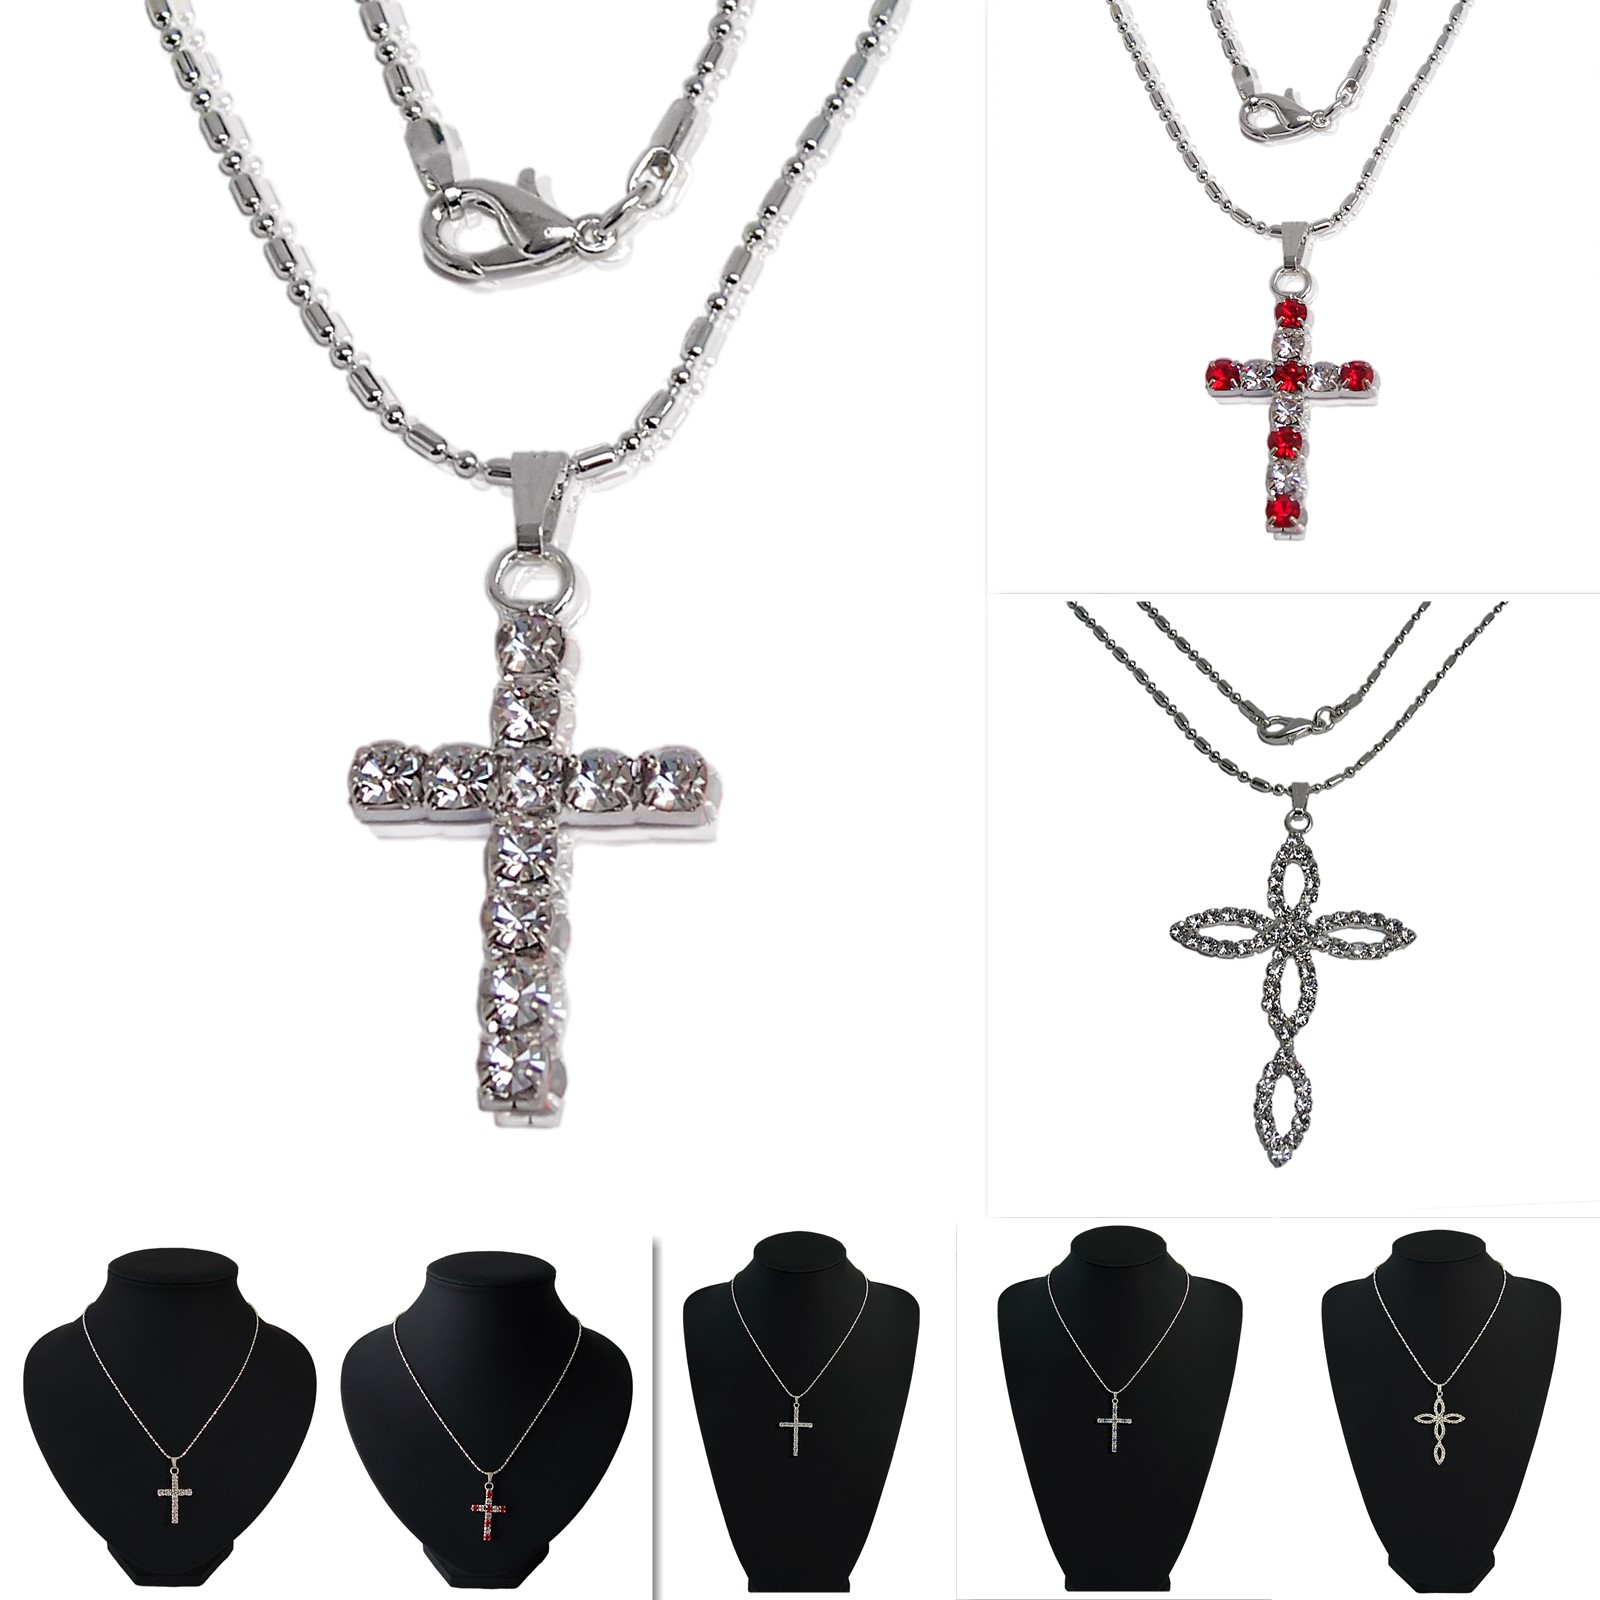 Halskette Kreuz Anhänger Strass Silber Kreuzkette Kette KV3